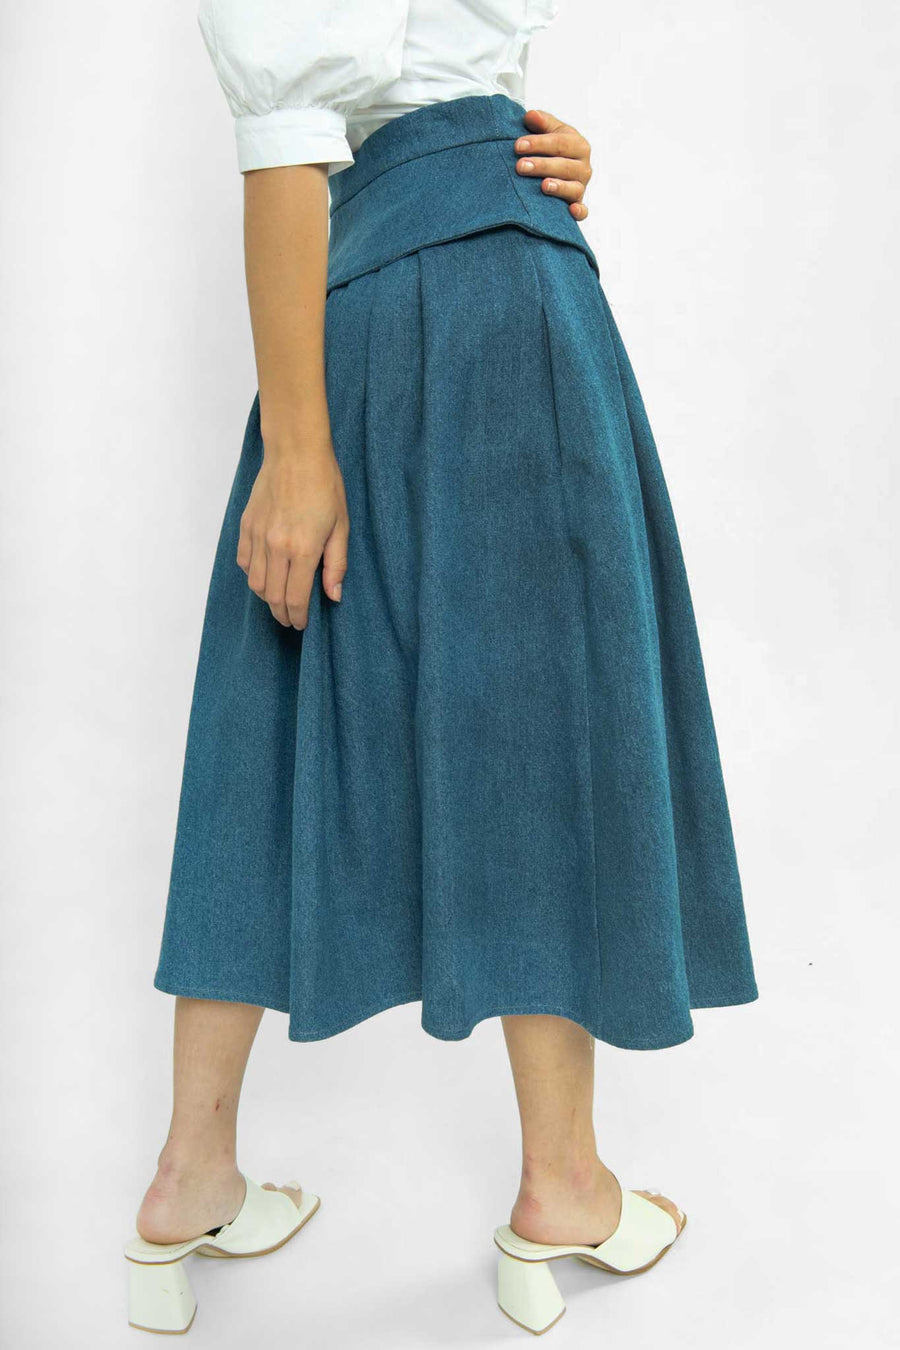 BATSHEVA - Landa Skirt in Medium Blue Denim